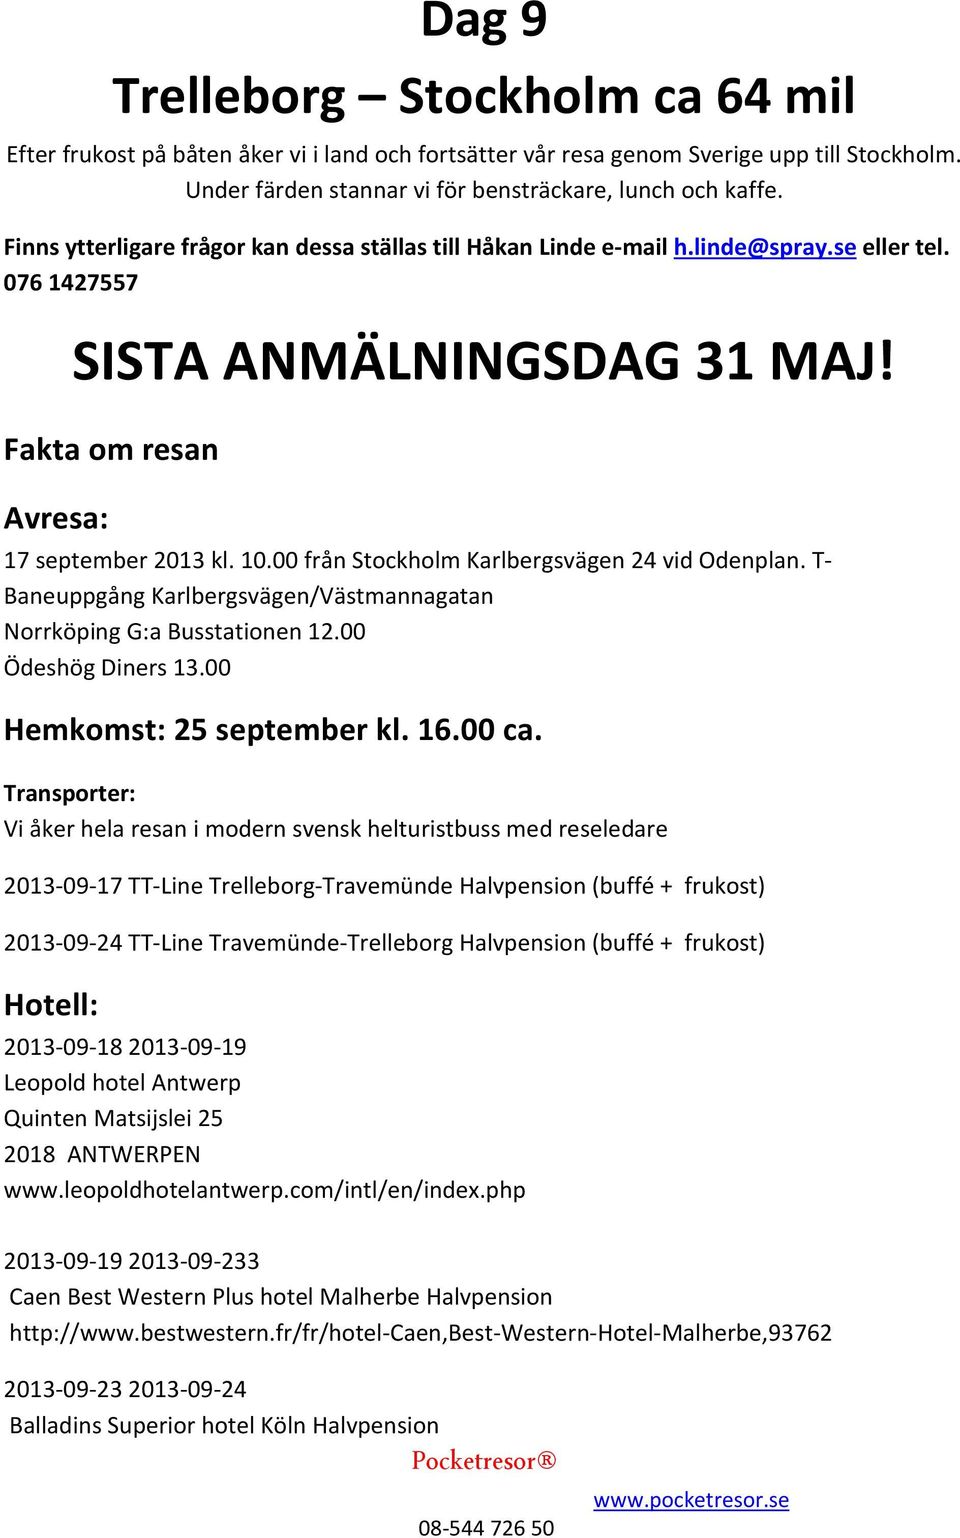 00 från Stockholm Karlbergsvägen 24 vid Odenplan. T- Baneuppgång Karlbergsvägen/Västmannagatan Norrköping G:a Busstationen 12.00 Ödeshög Diners 13.00 Hemkomst: 25 september kl. 16.00 ca.